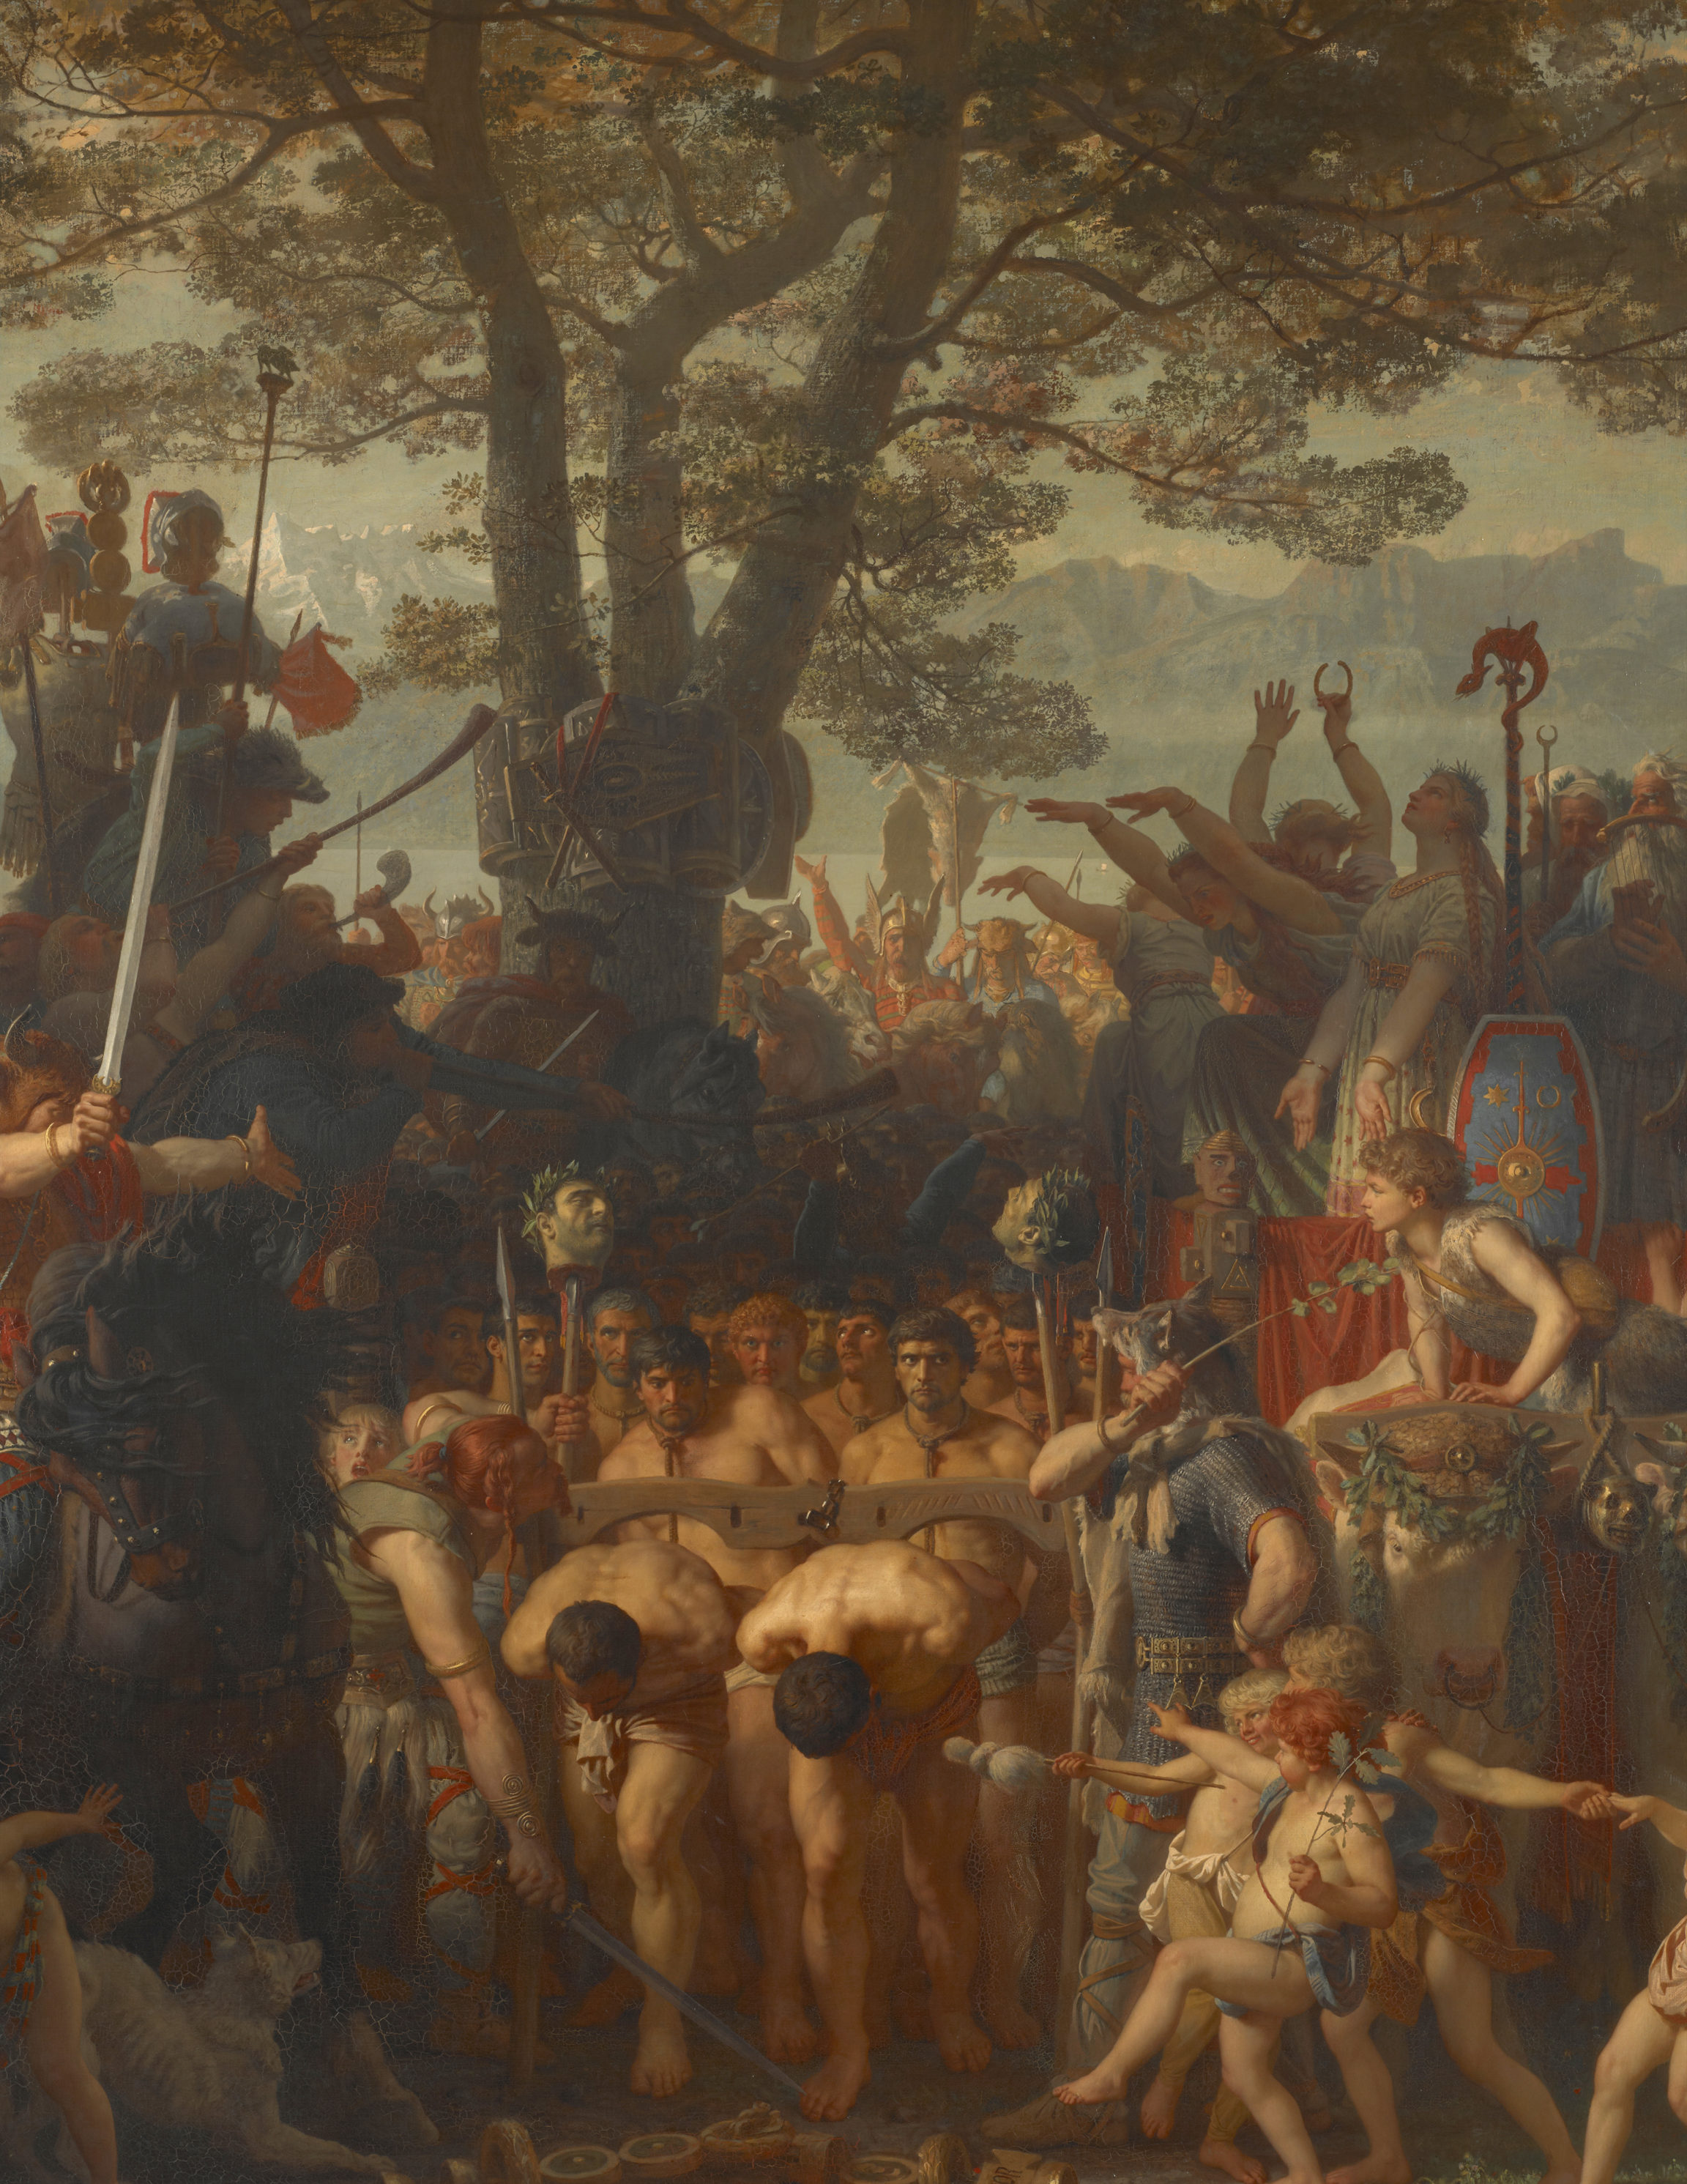 Charles Gleyre, Les Romains passant sous le joug ou La bataille du Léman, 1858